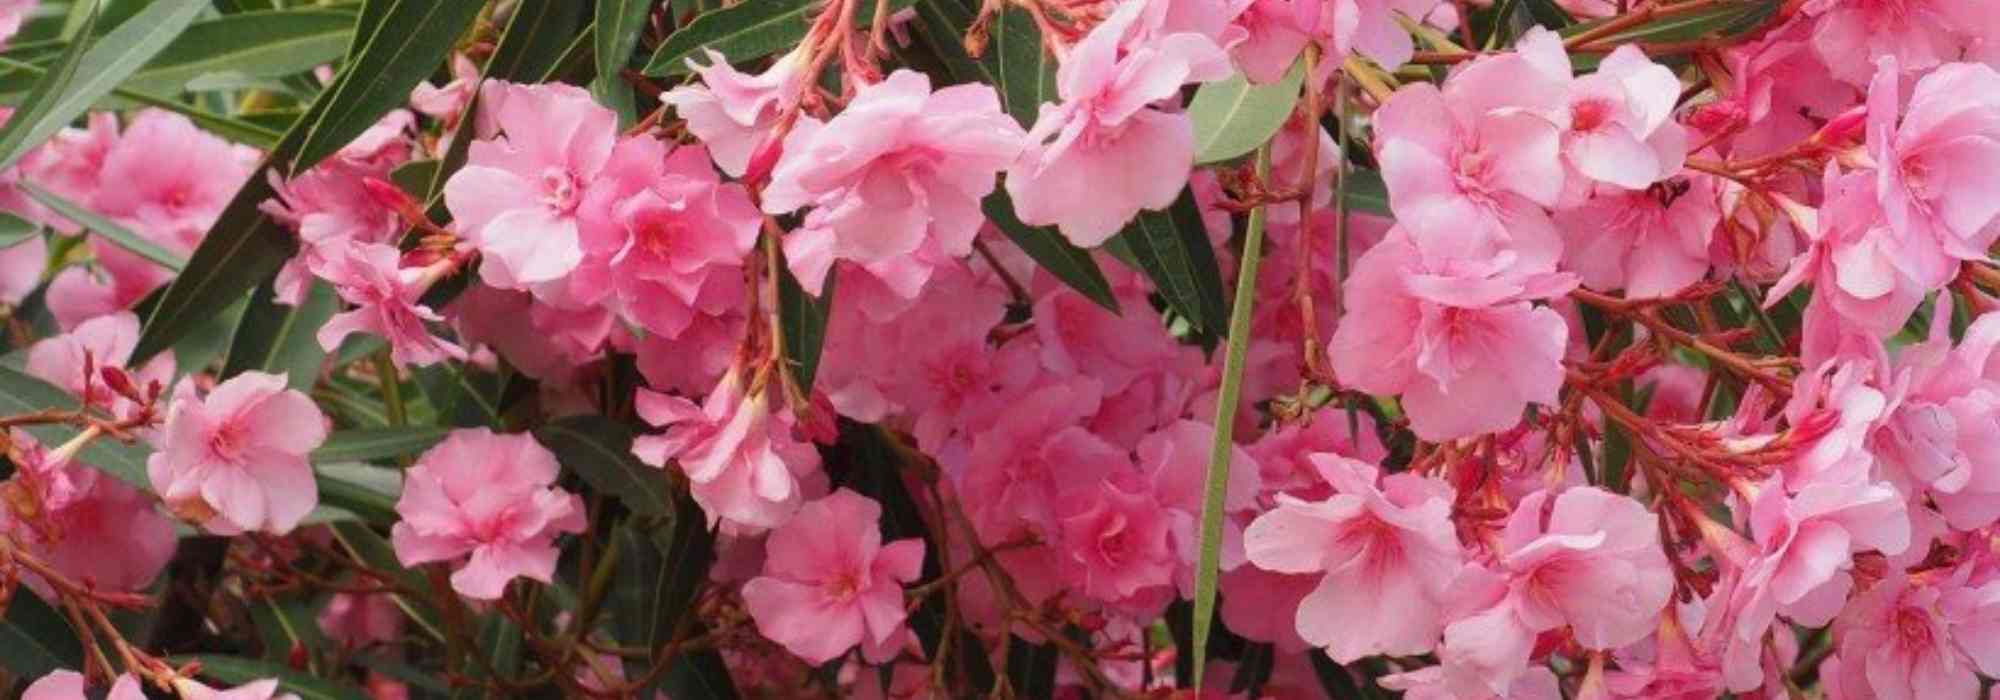 9 arbustes à fleurs roses qu'il faut avoir dans son jardin